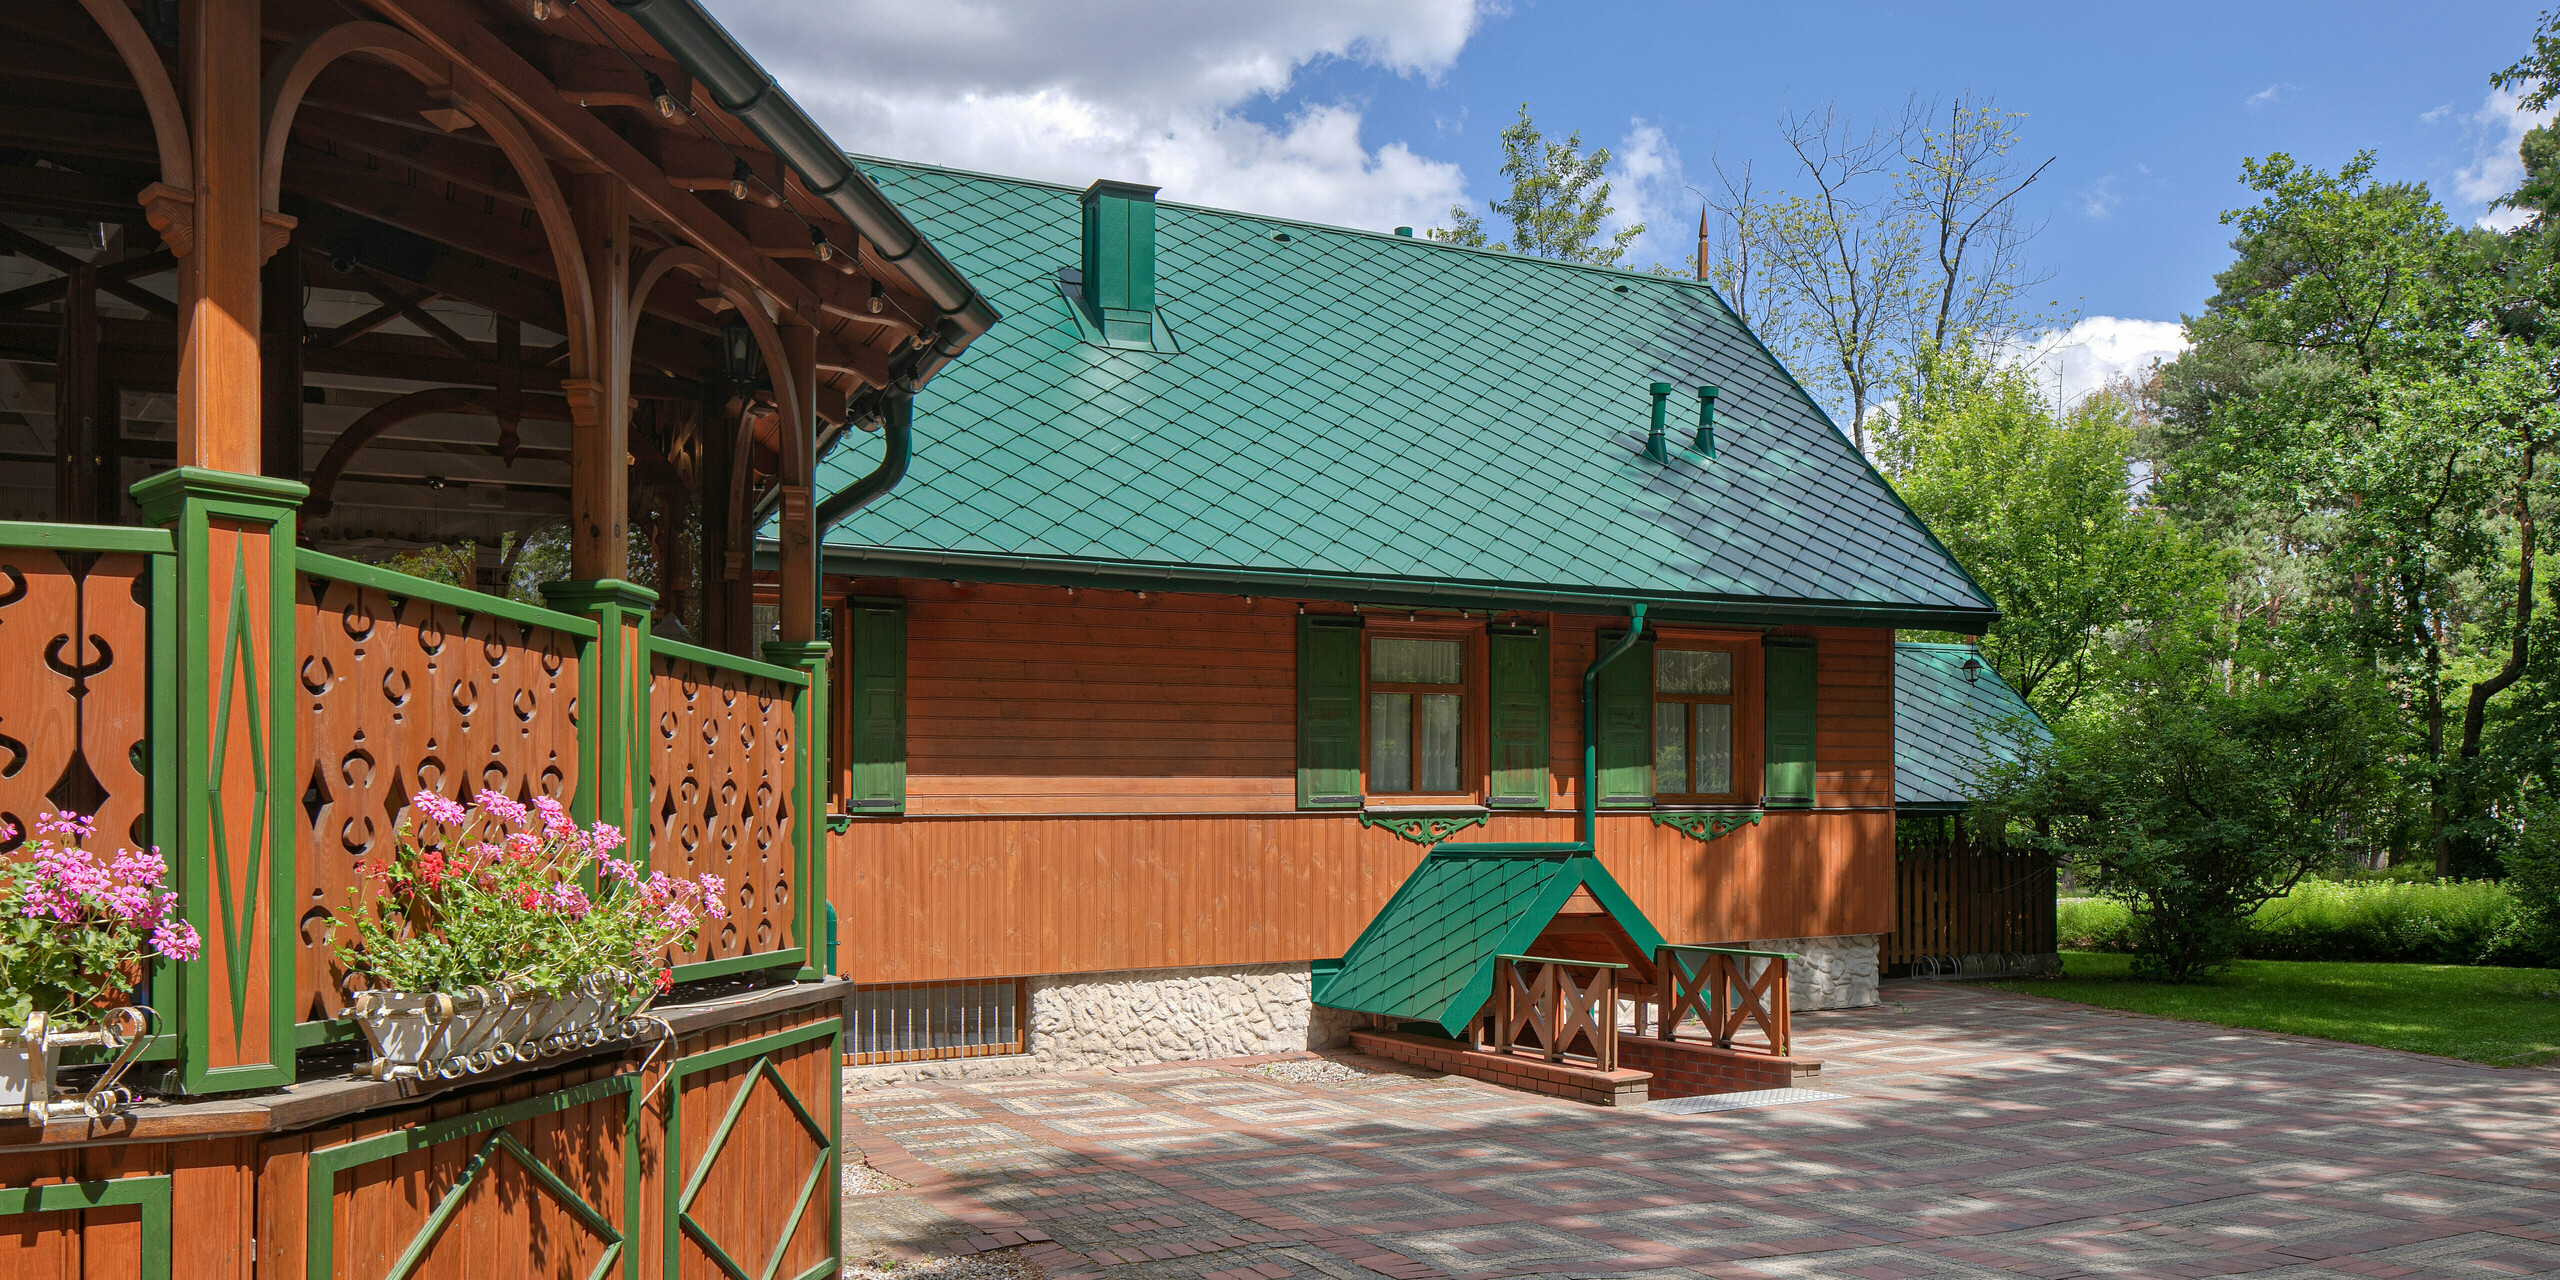 Cukiernia Sosenka avec un toit PREFA en losange ainsi que tuyau de descente et gouttière suspendue en vert mousse